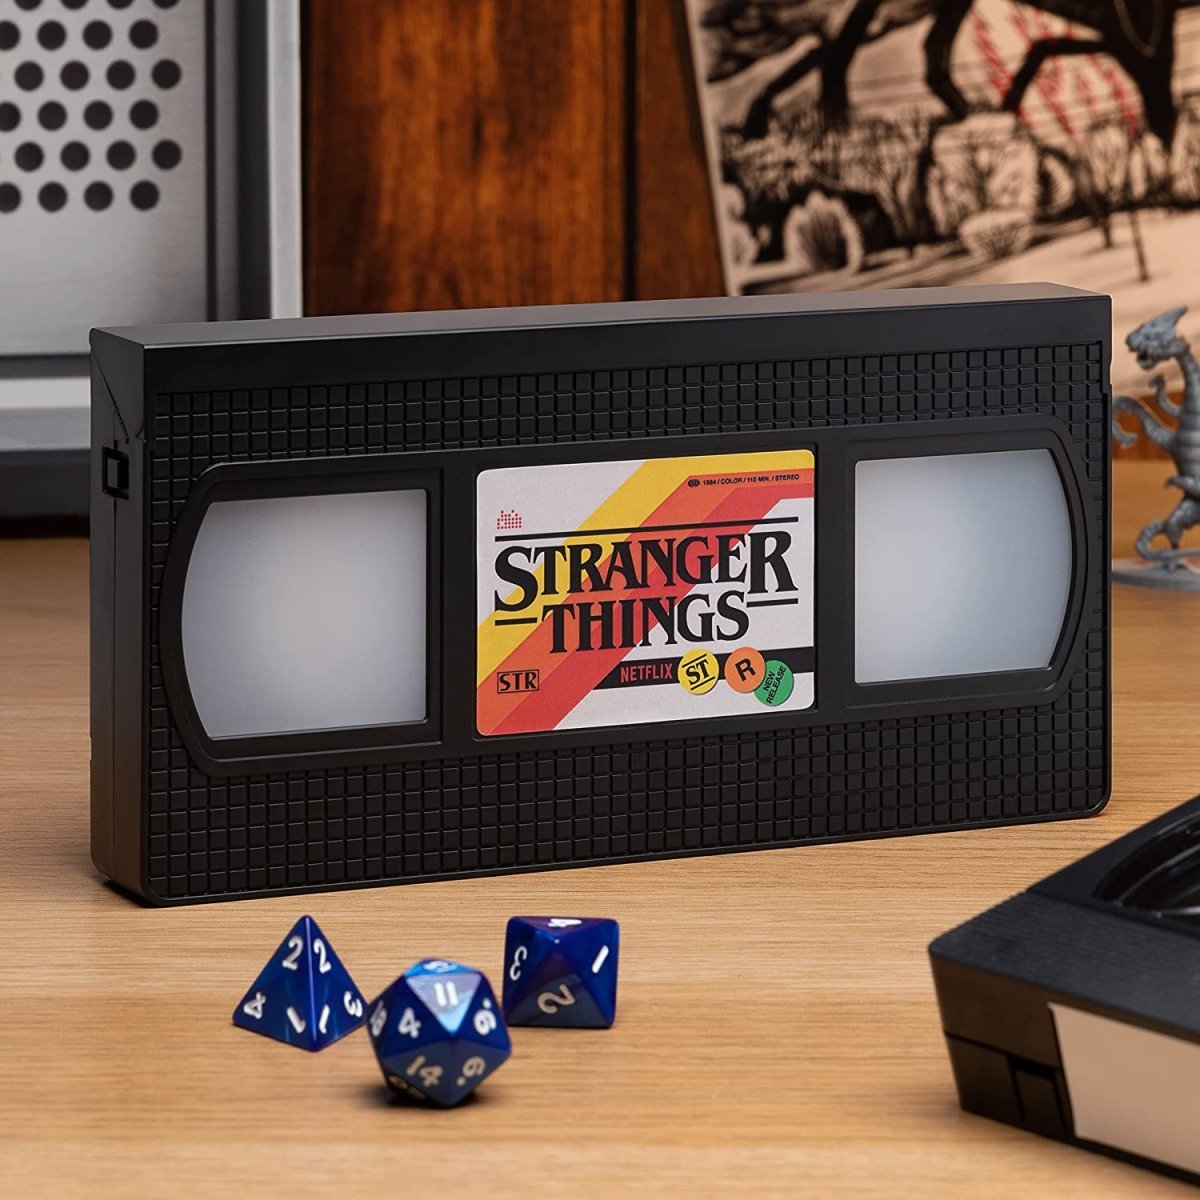 VHS Logo Light - Stranger Things - GameOn.games